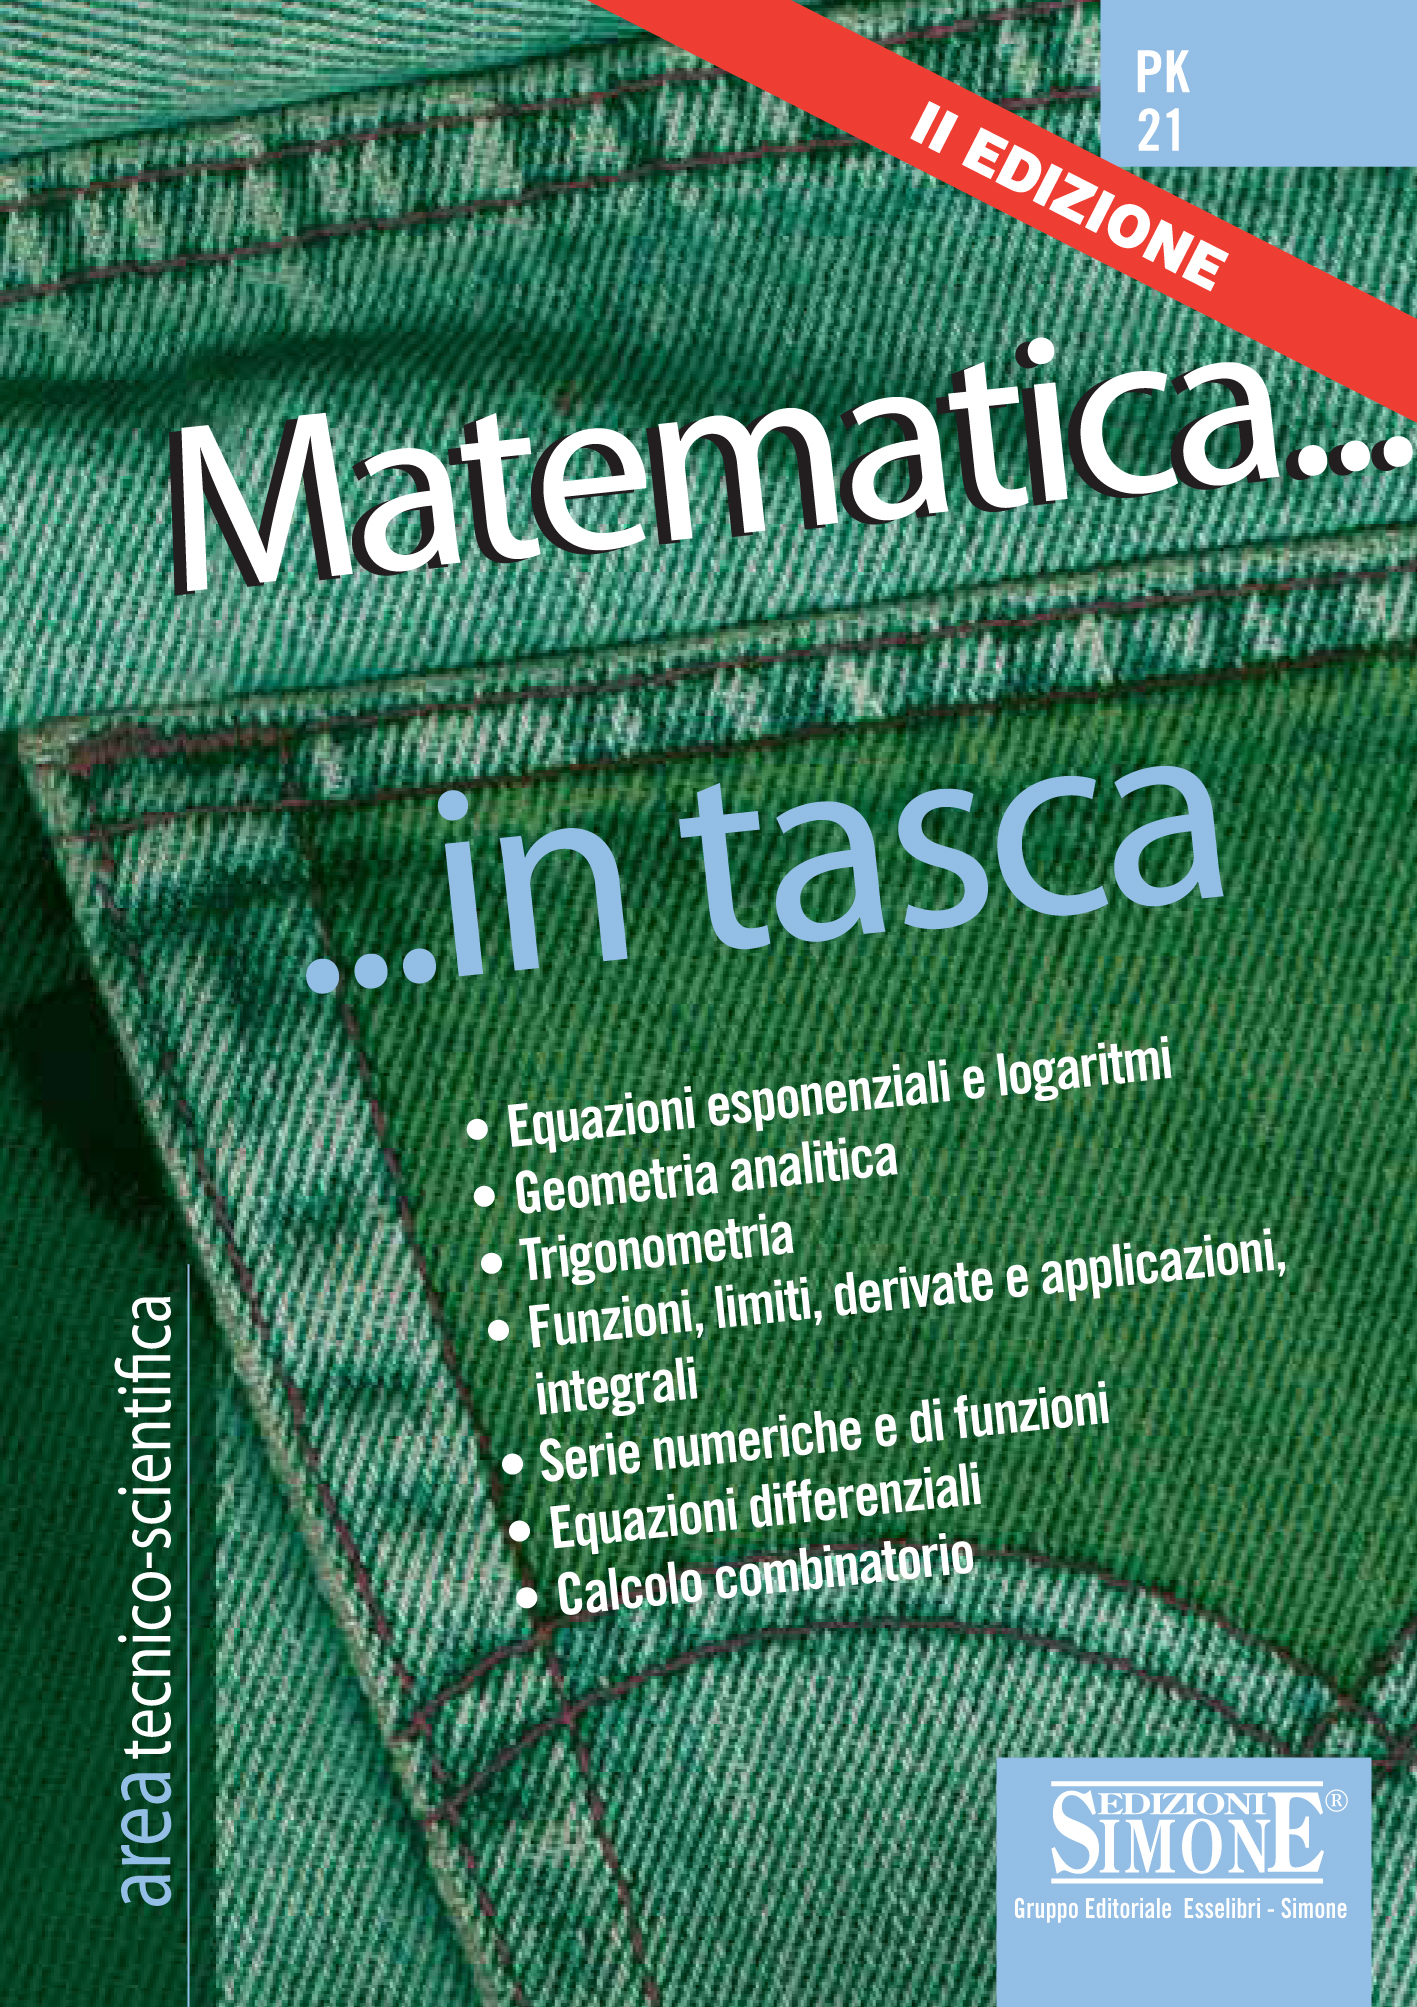 Matematica... in tasca - Nozioni essenziali